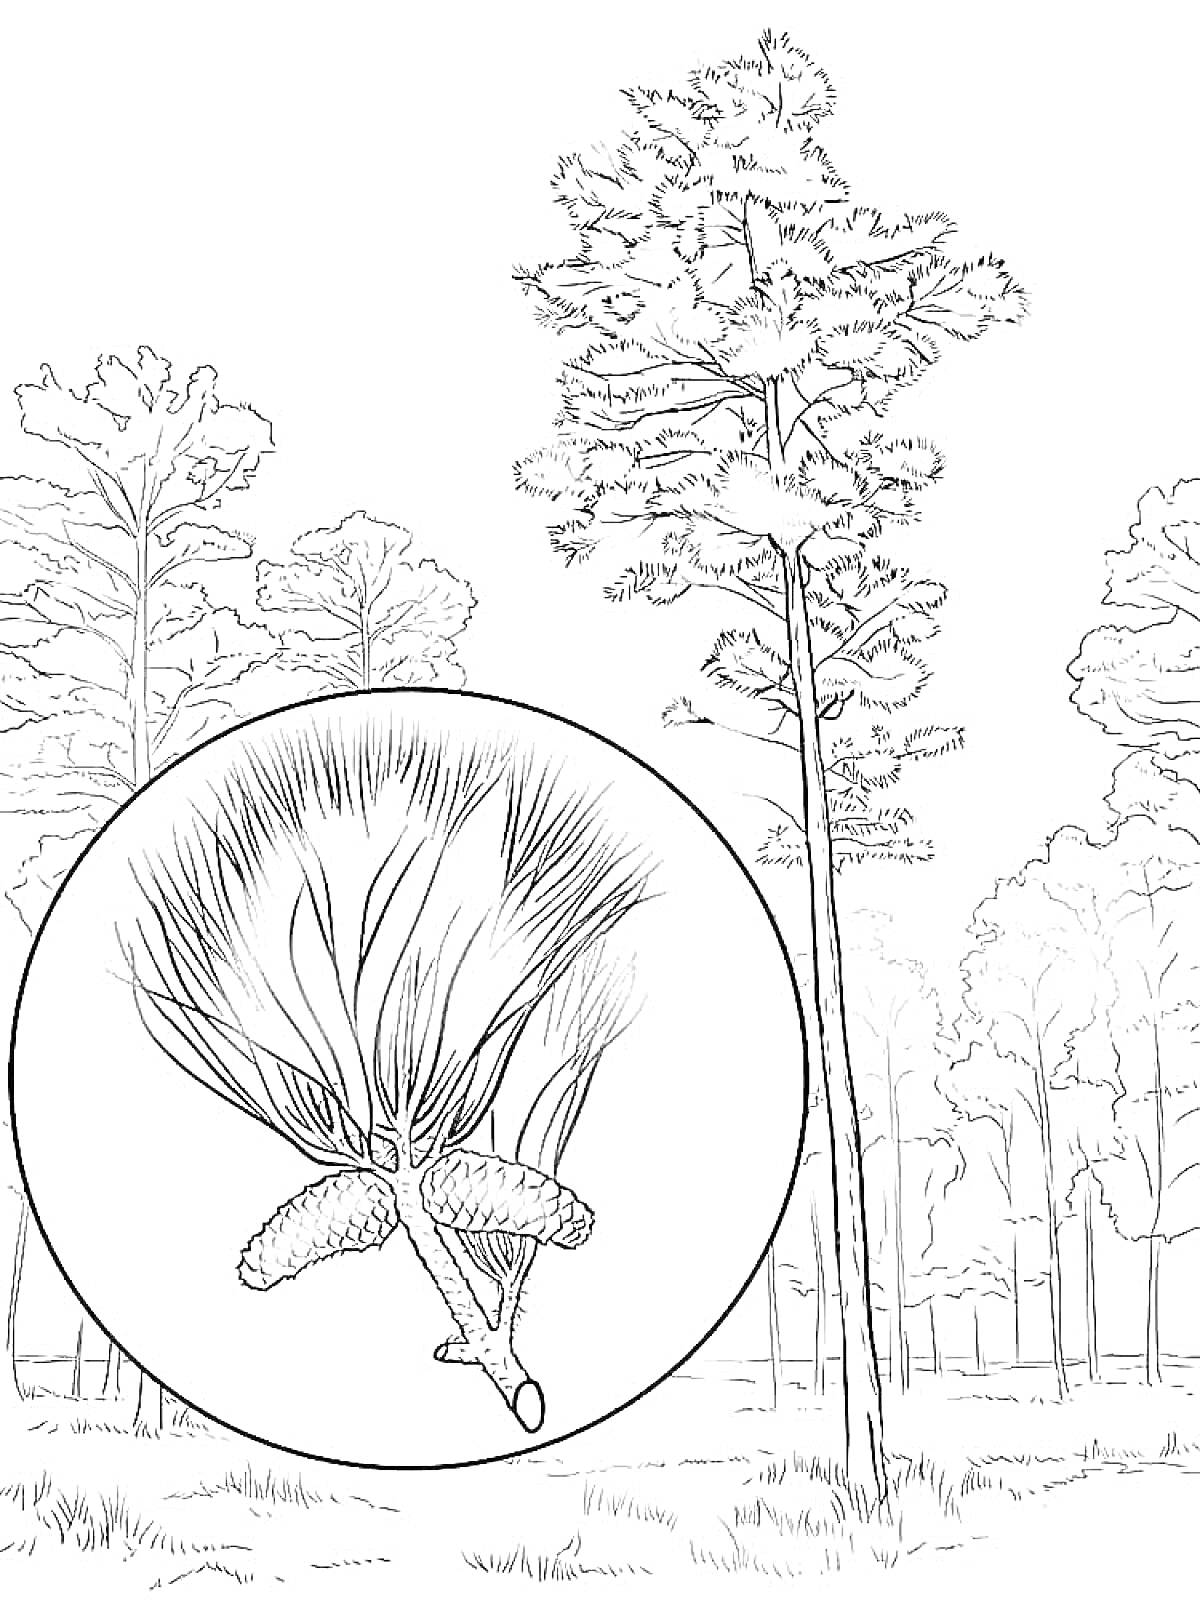 Раскраска Сосновый лес с увеличенным изображением хвои и шишек сосны